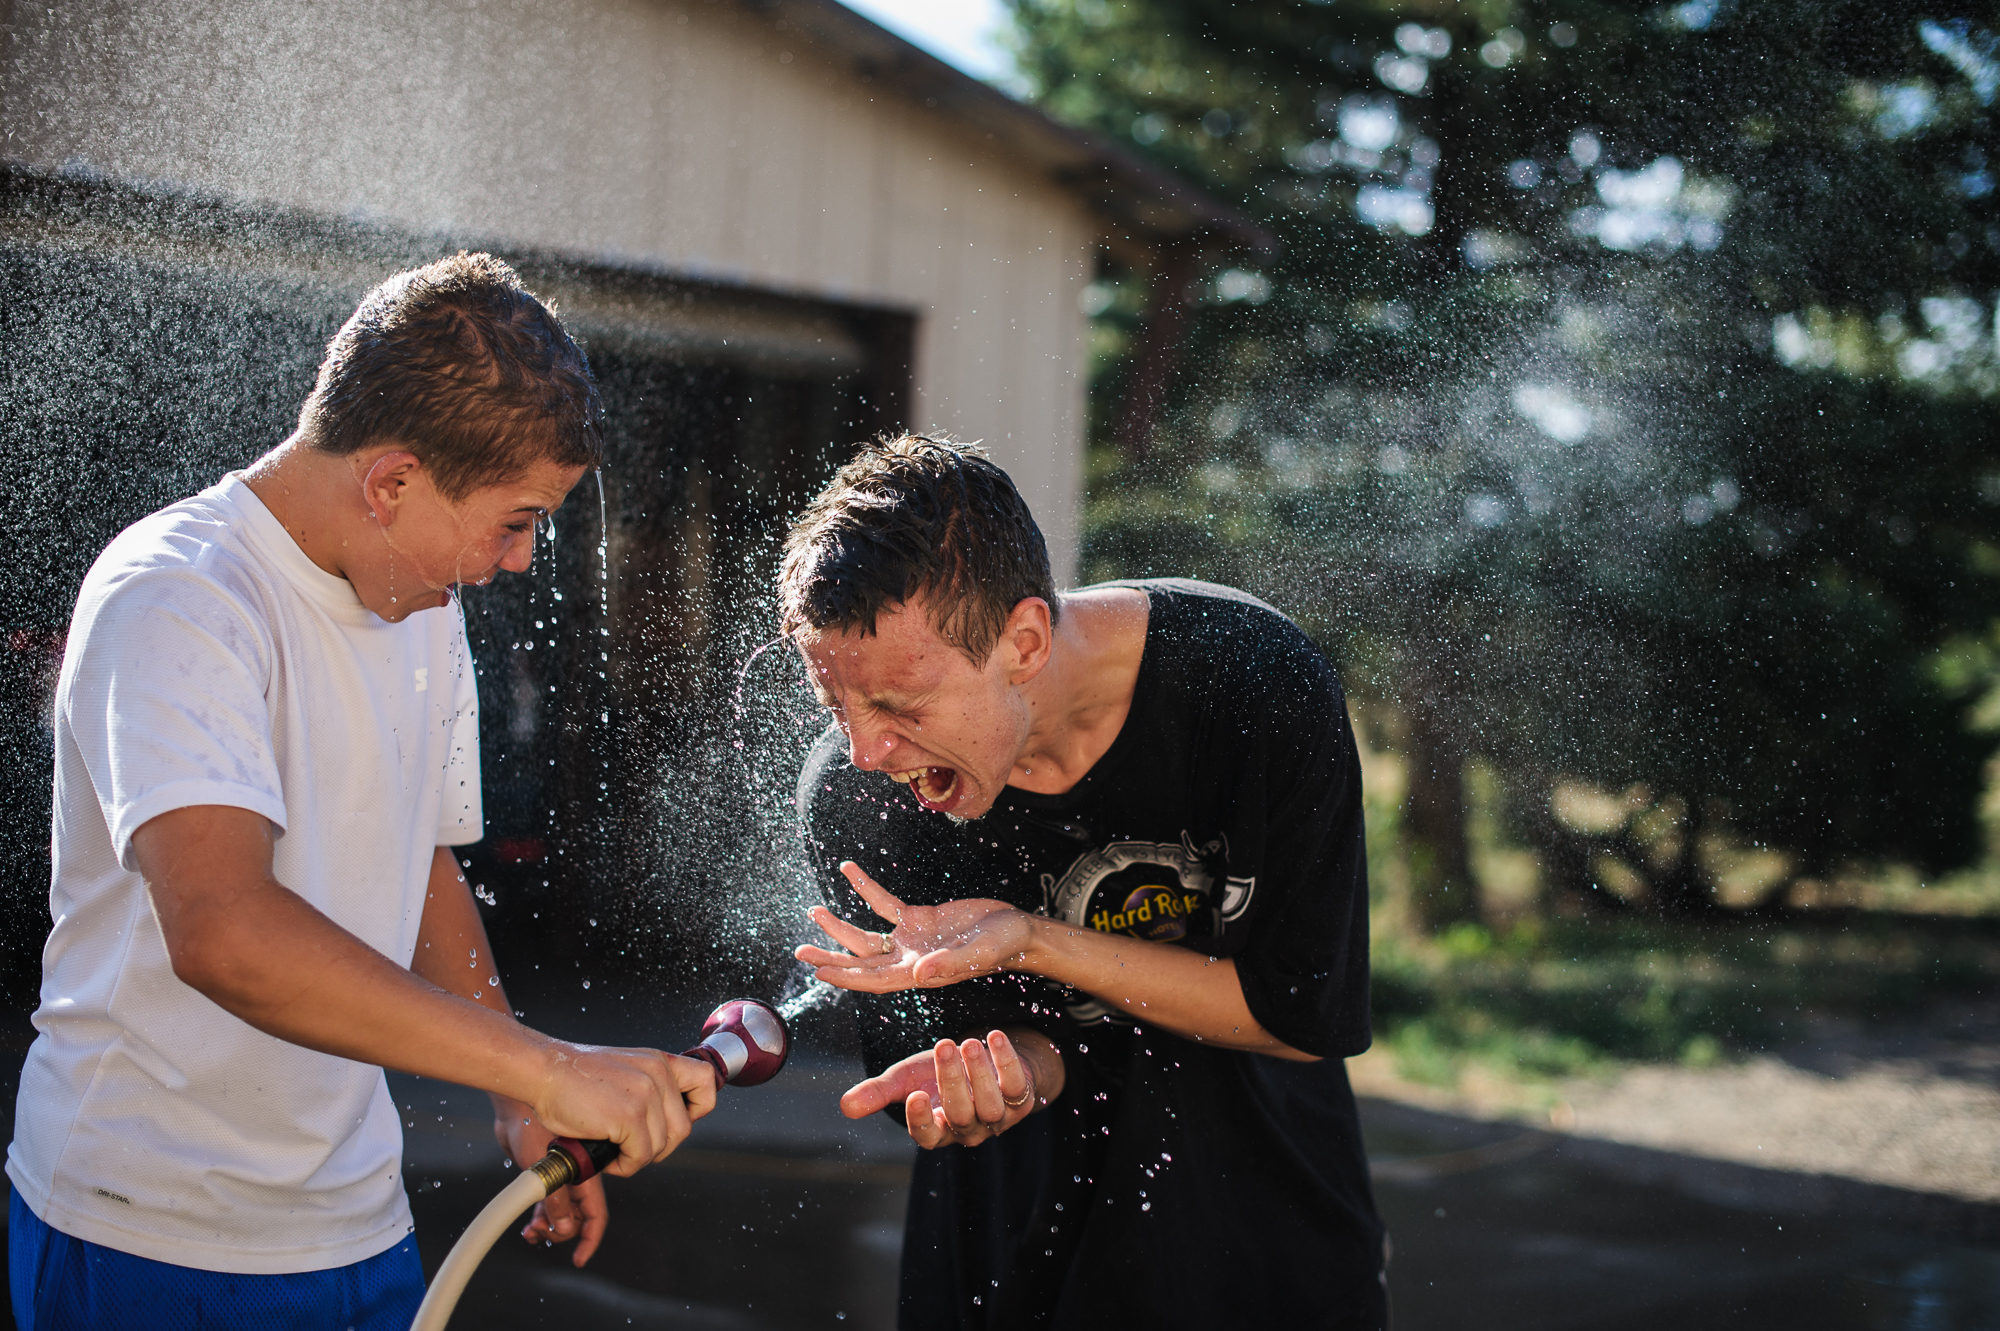  Vinny, age 13, sprays David, age 19, with a hose, 2012. 